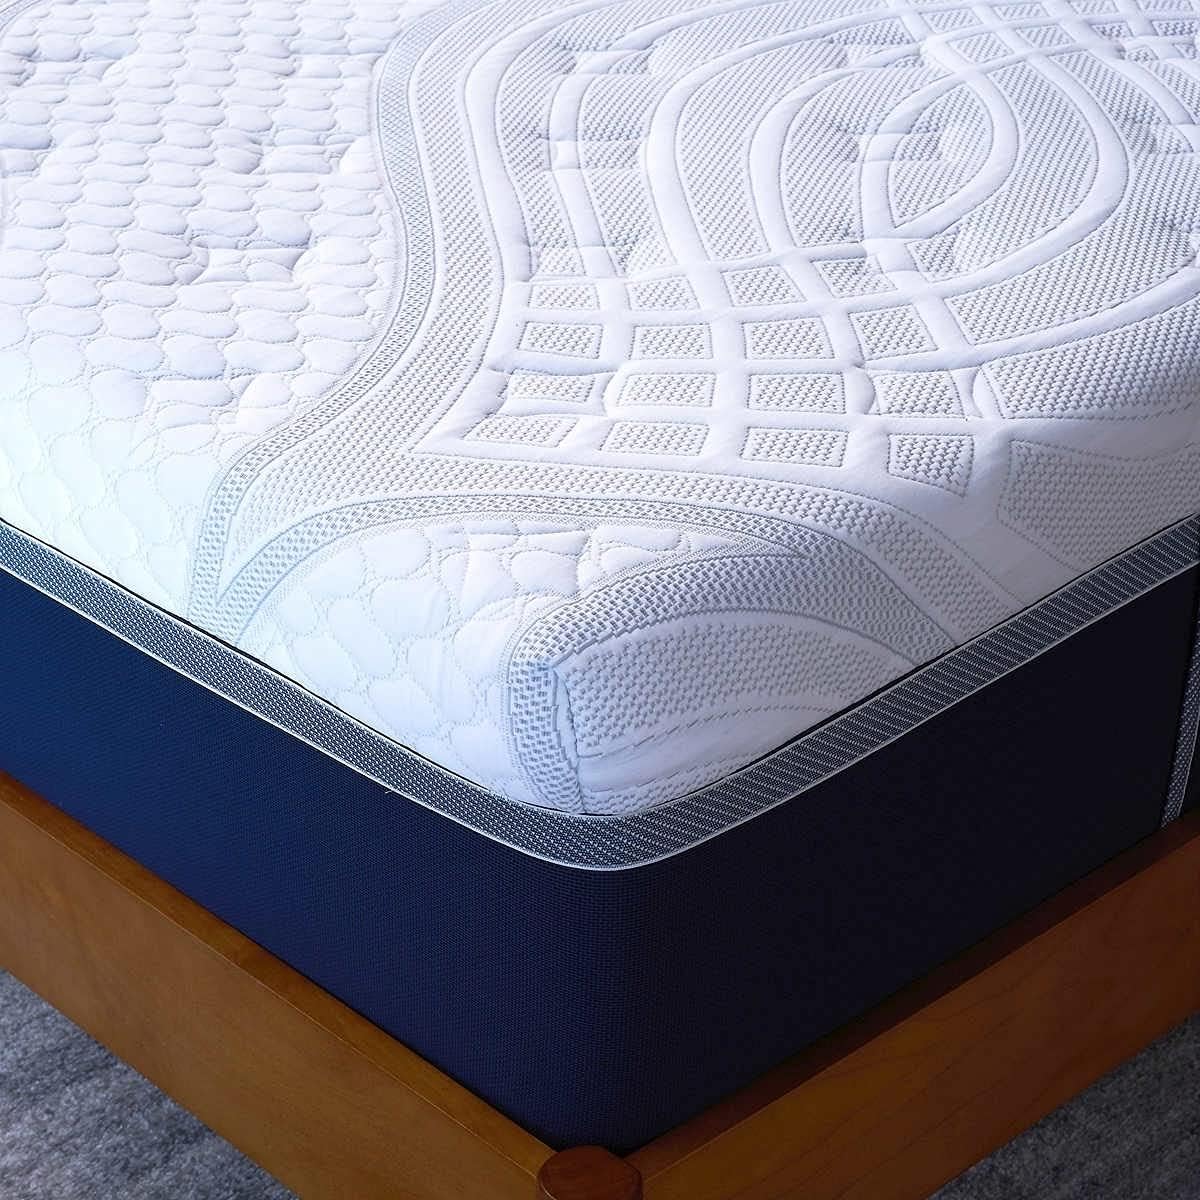 Novaform comfortgrande plus mattress review - cover